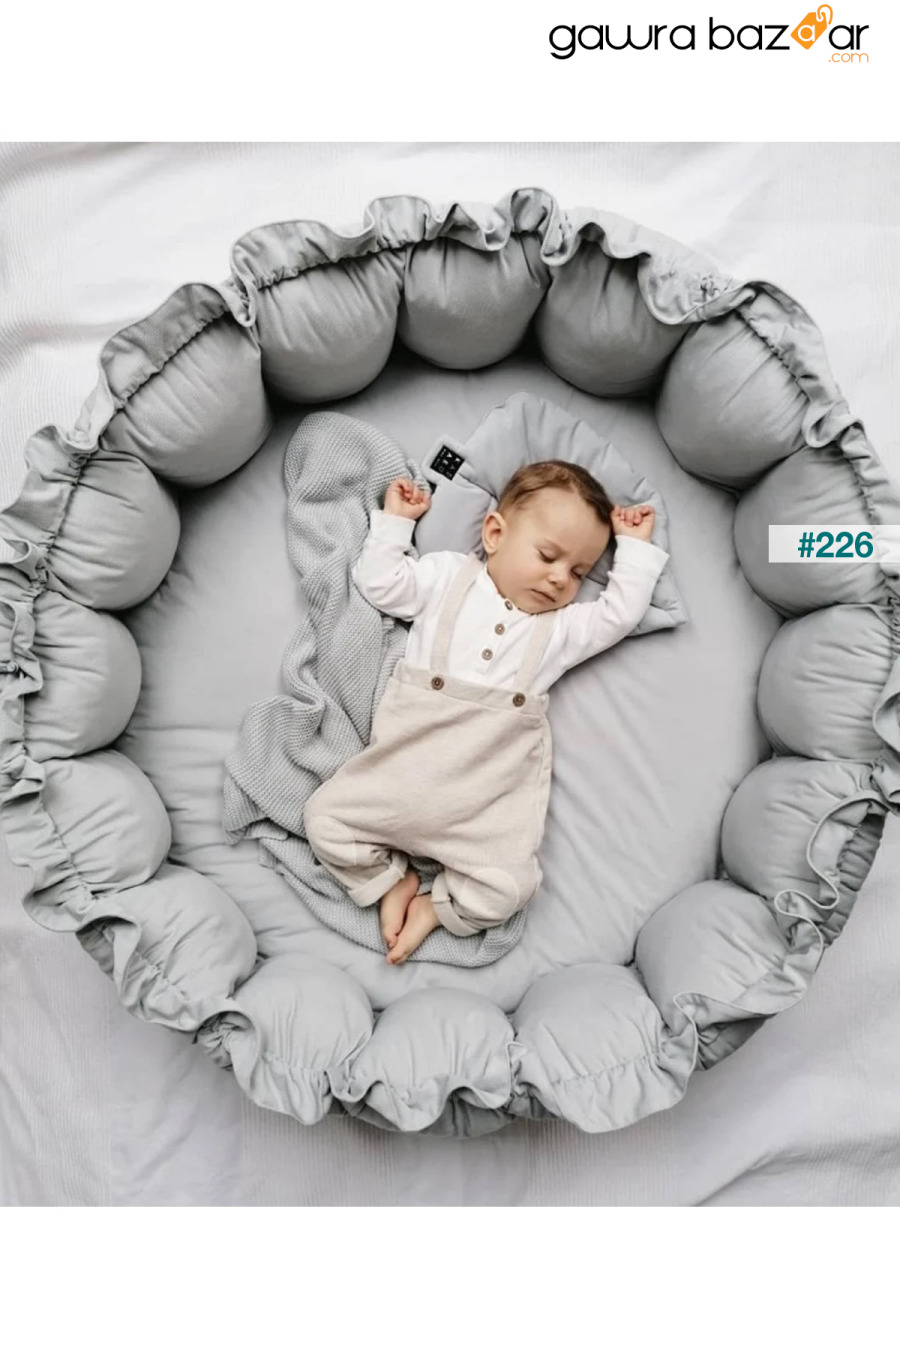 سجادة اللعب الرمادية القابلة للسحب Jaju-babynest Baby Bed Play Nest Baby Nest Jaju Baby 0